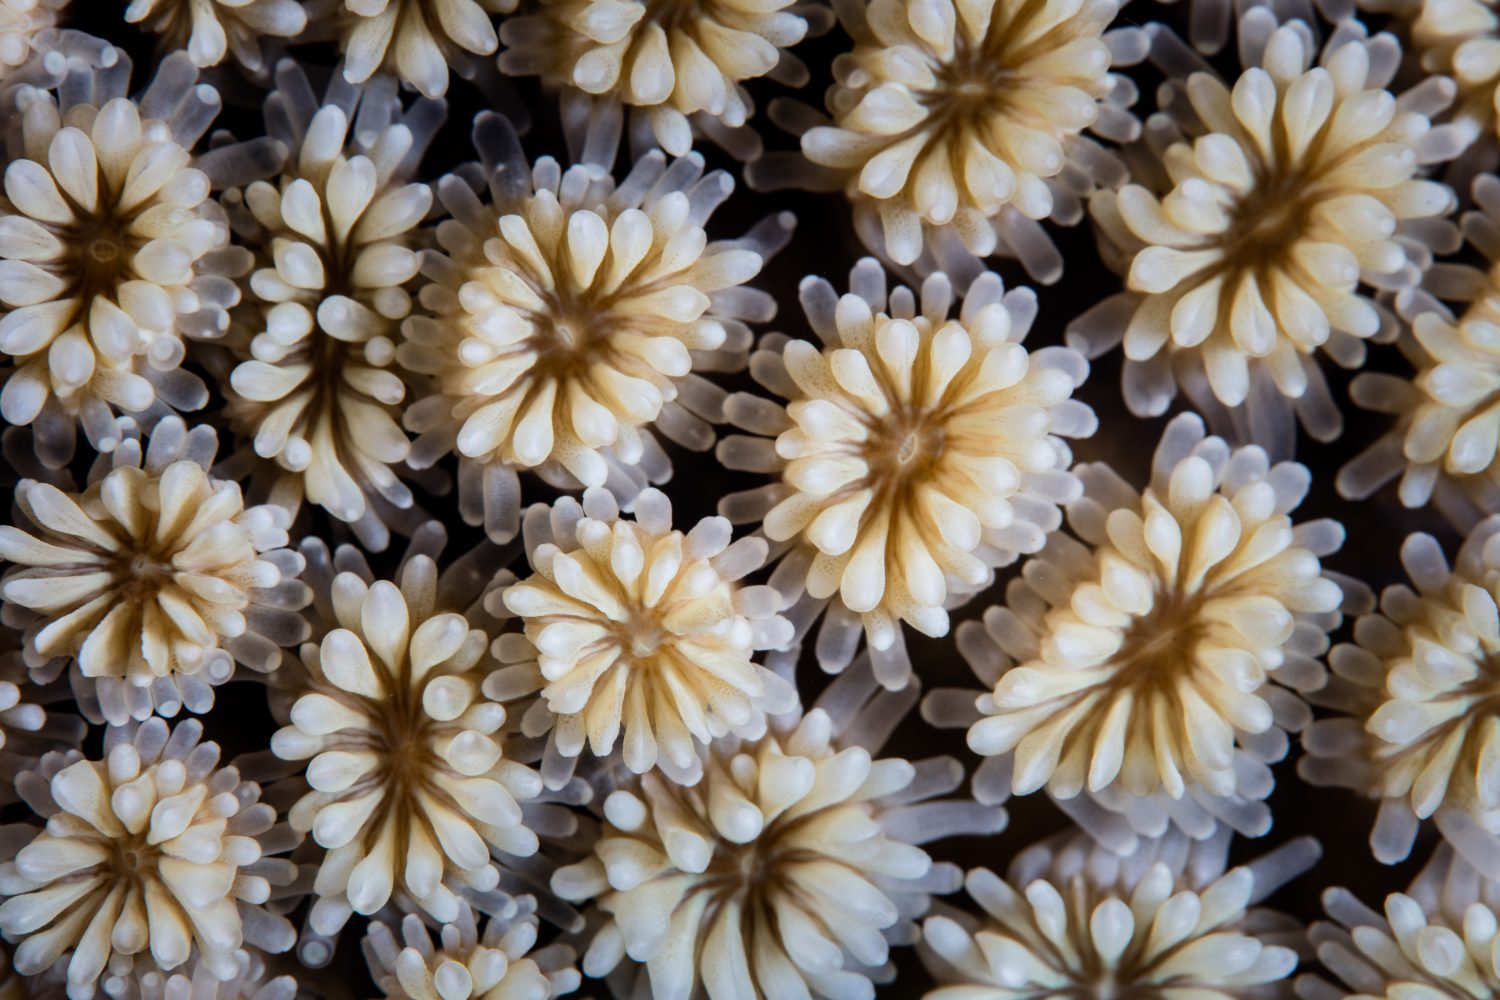 Dettaglio di un corallo galattico, Galaxea fascicularis, che cresce su una barriera corallina nel Parco Nazionale di Komodo, Indonesia.  Questa è una delle centinaia di specie di coralli che formano barriere coralline trovate nella regione dell'Indo-Pacifico.